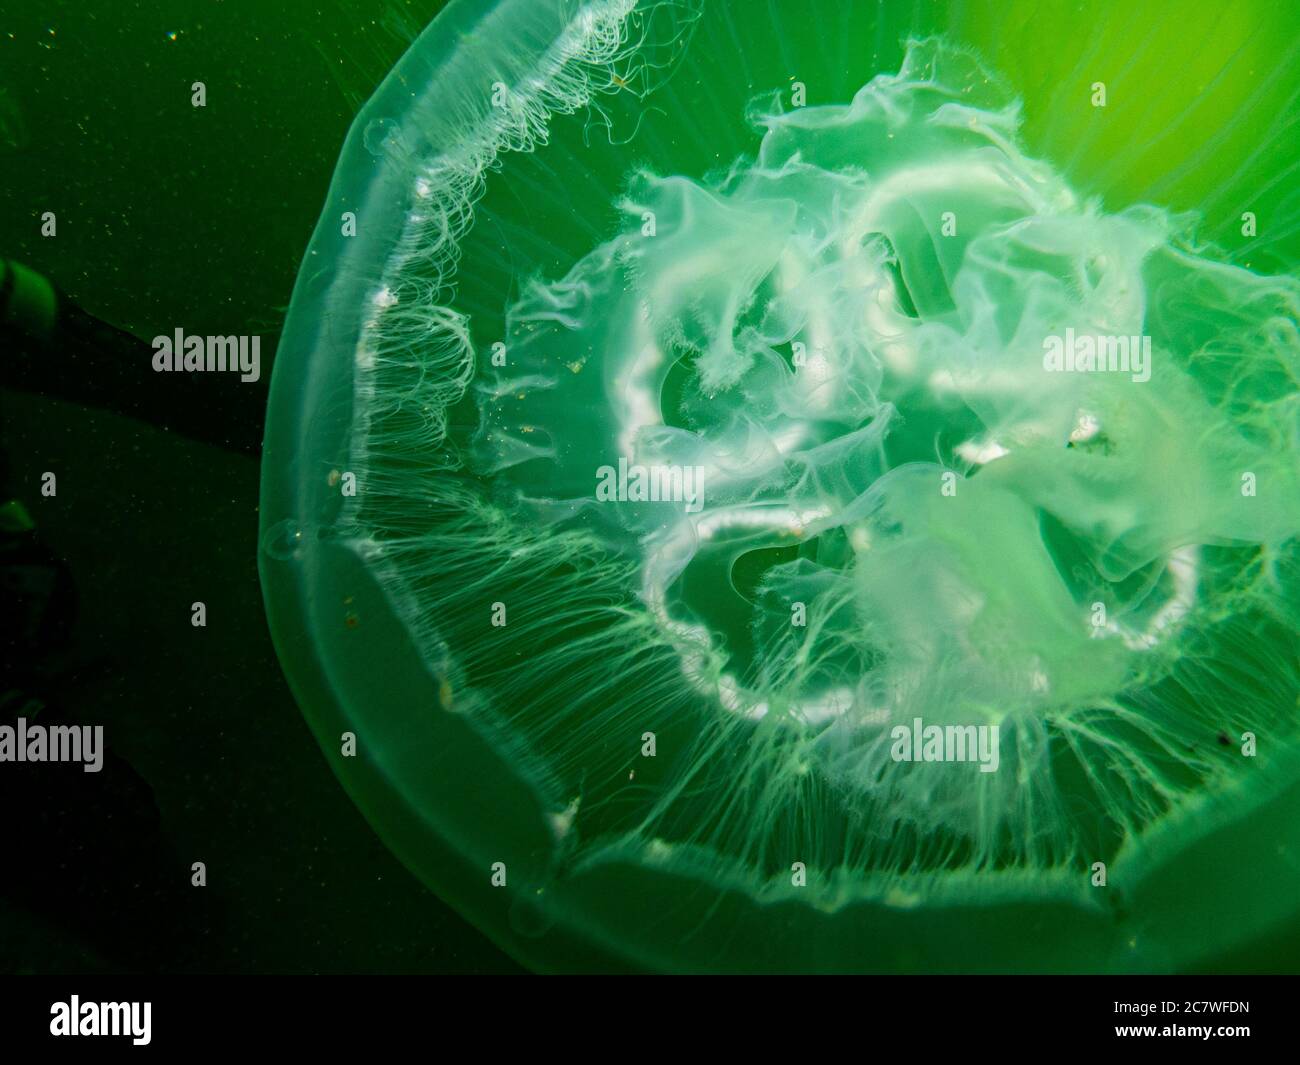 Un pesce di Jellyfish stupefacente appare in verde isolato in acqua nera. Foto di Oresund, Malmo, nel sud della Svezia. Acqua verde fredda. Foto Stock